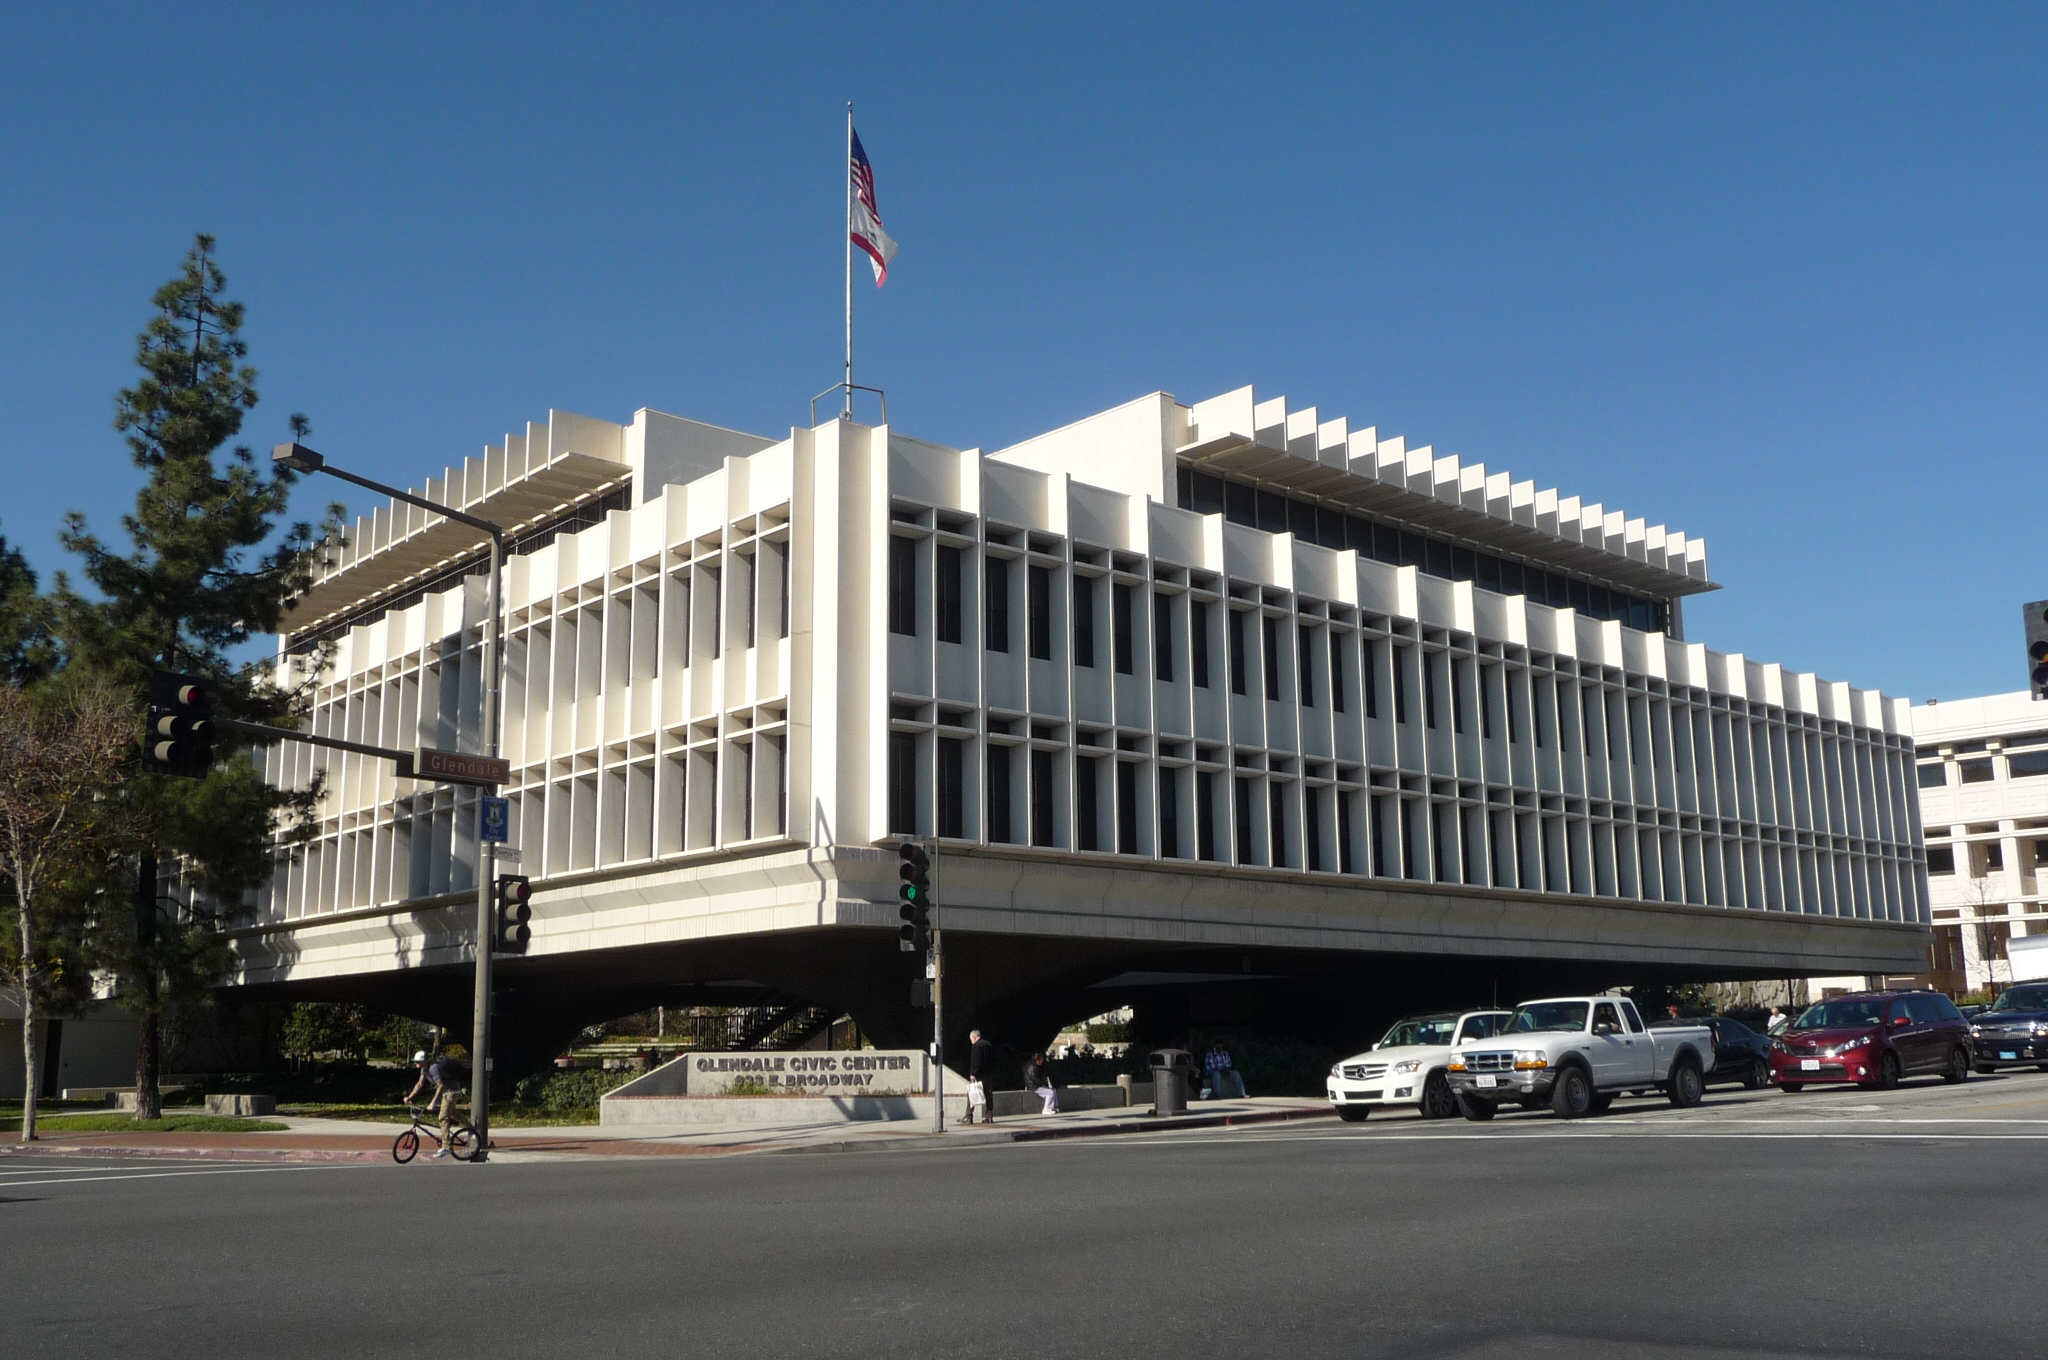 Glendale Municipal Services Building